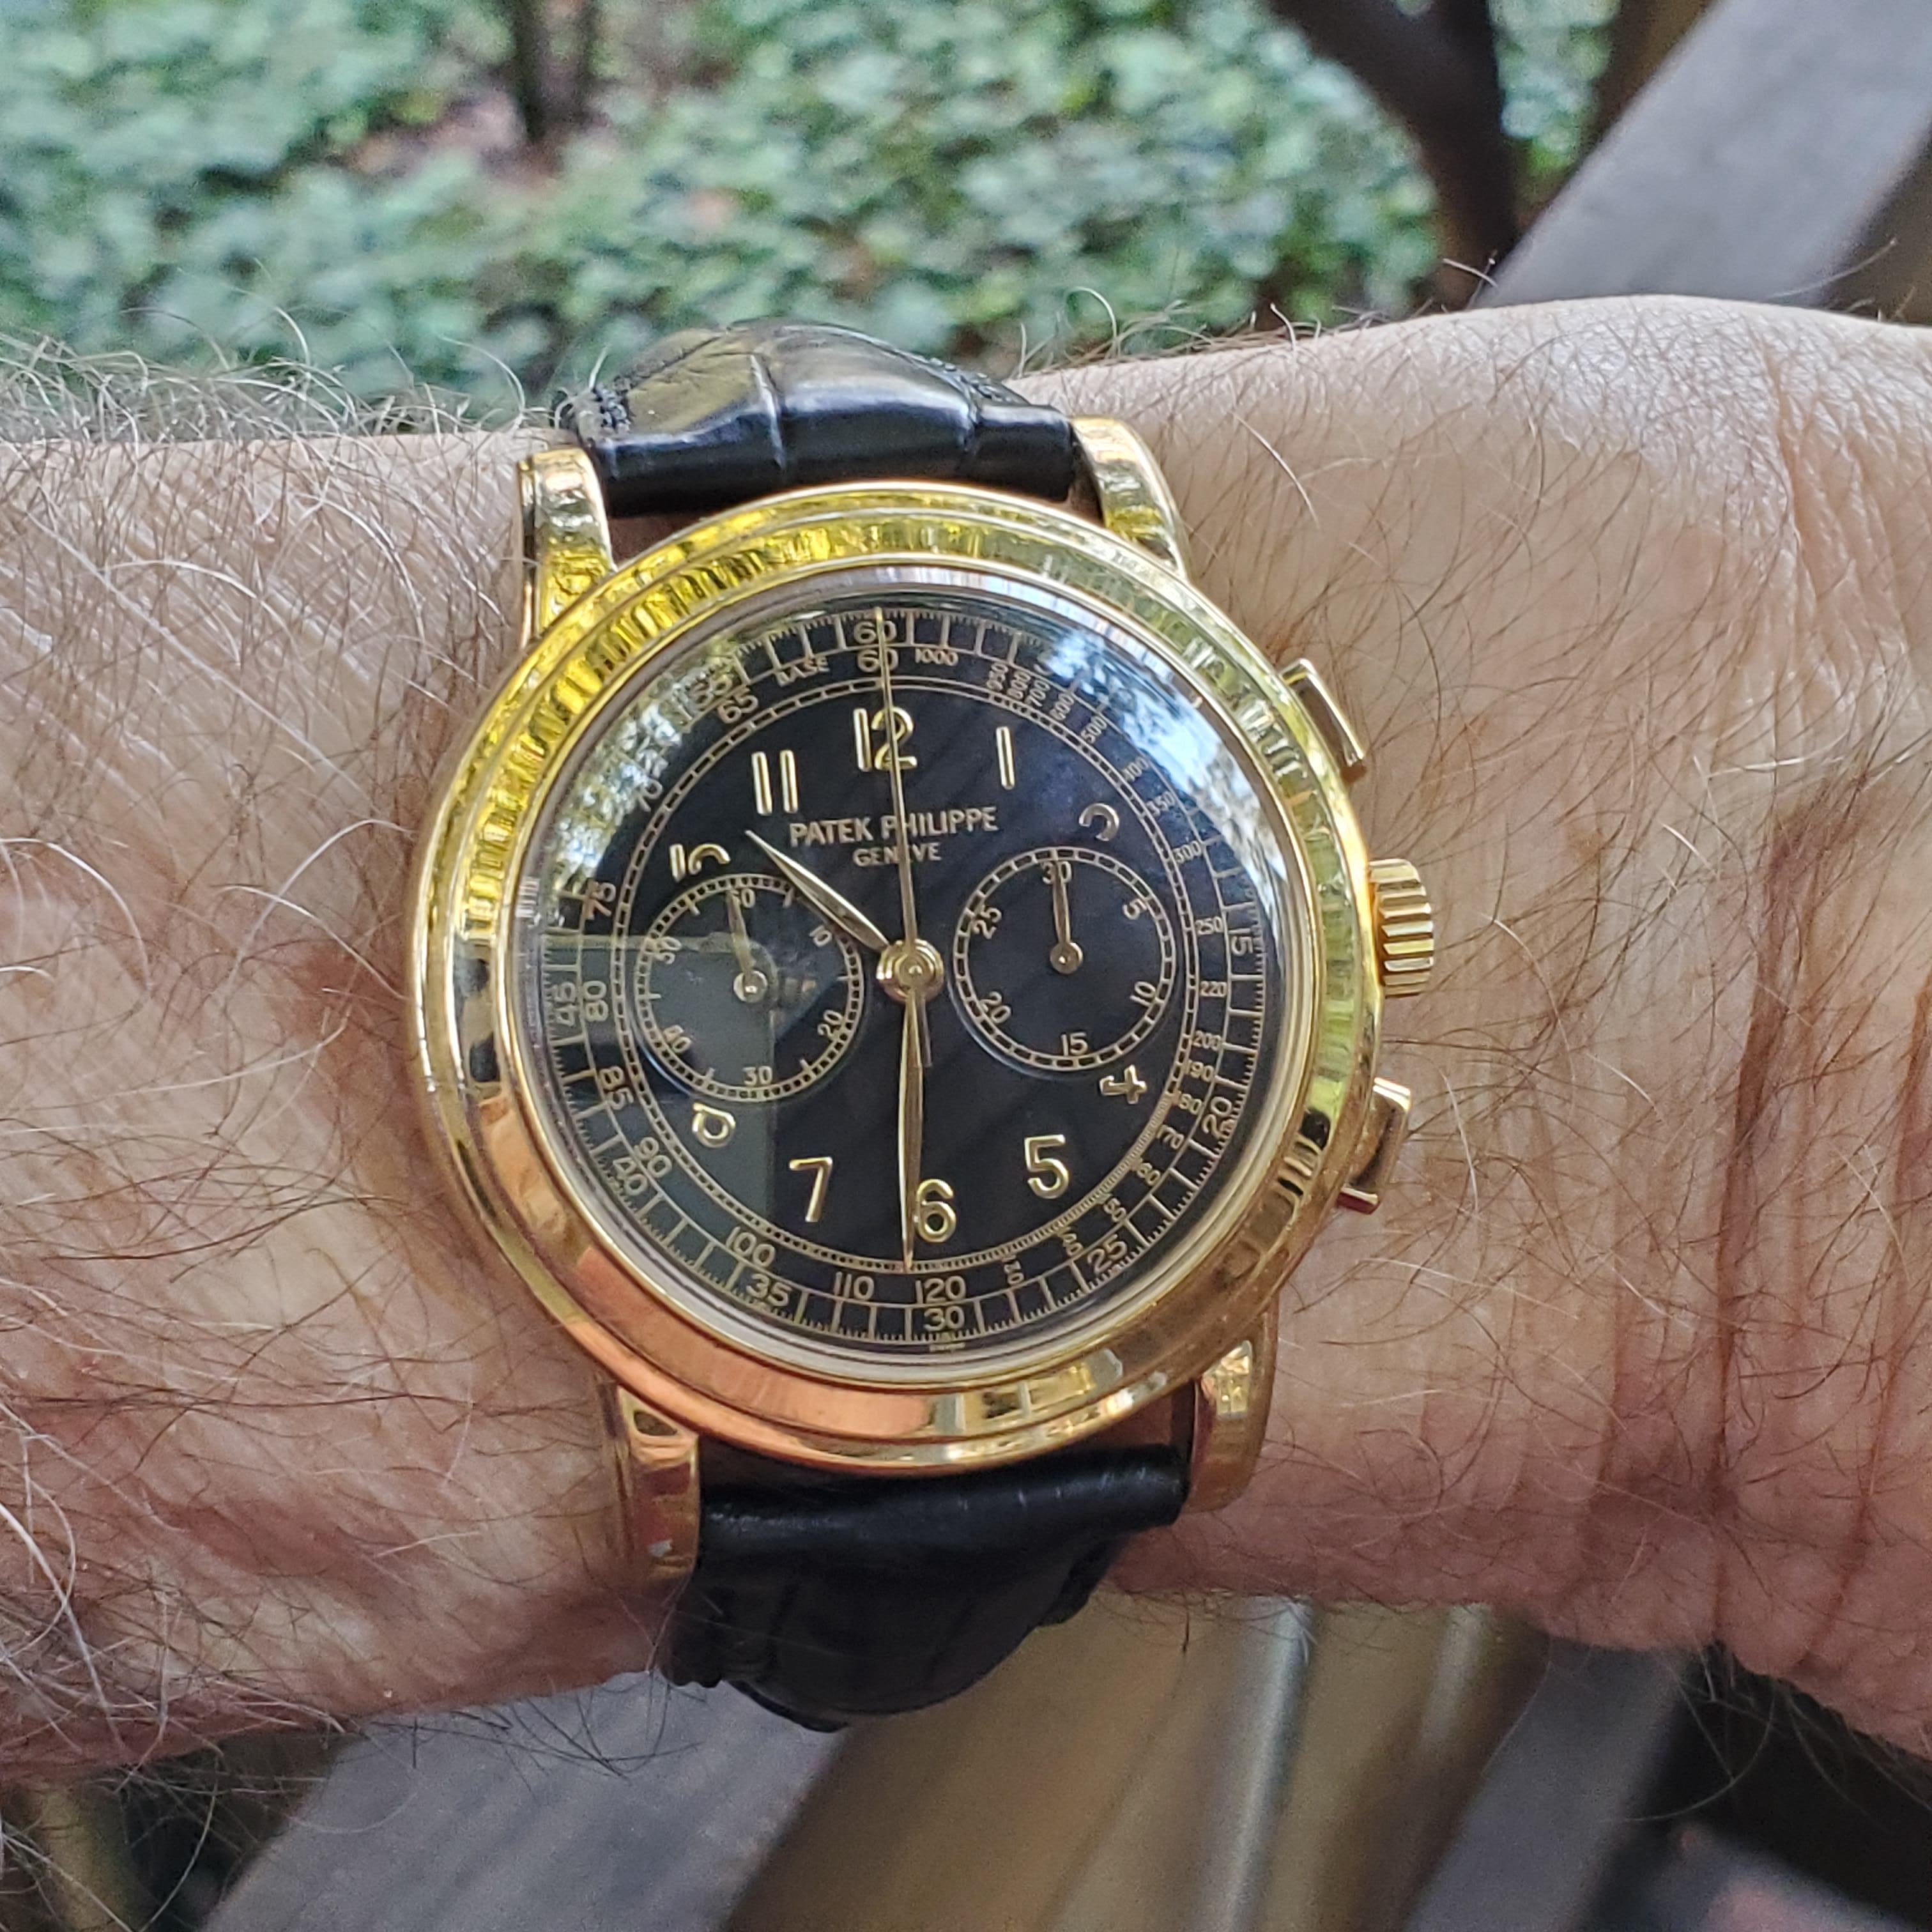 Patek Philippe Ref# 5070J-001  Questo esemplare è in condizioni eccellenti con marchi molto nitidi.

L'orologio cronografo 5070J a carica manuale ha una cassa di 42 mm. Questo è un esemplare in oro giallo con quadrante nero e fibbia deployante in